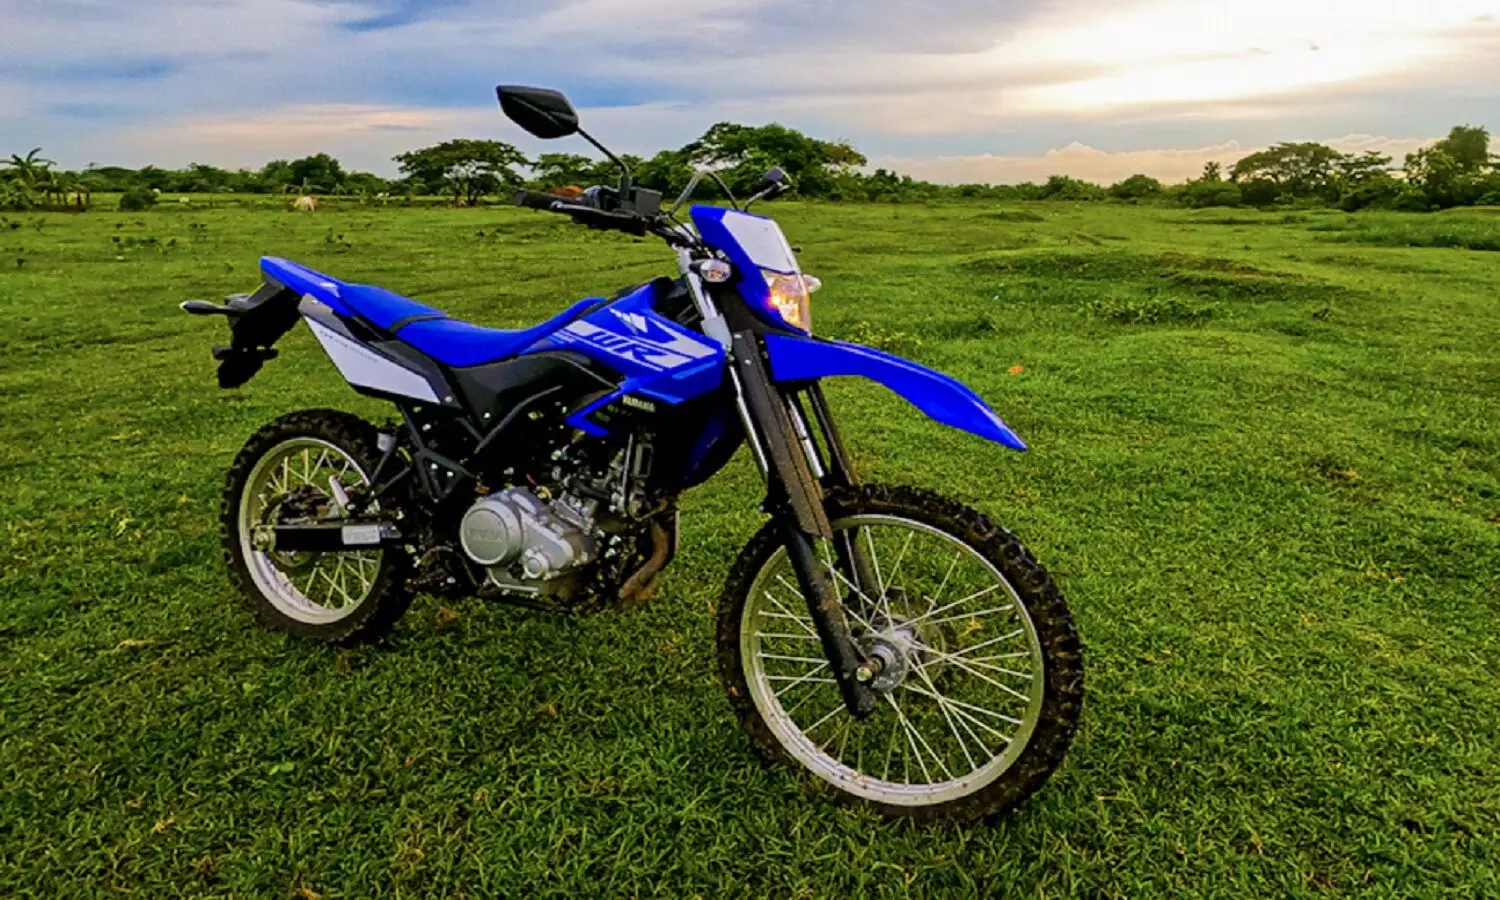 Yamaha Adventure Motorcycle: यामाहा लांच करेगी अपनी 150cc एडवेंचर बाइक, जानें डिटेल्स